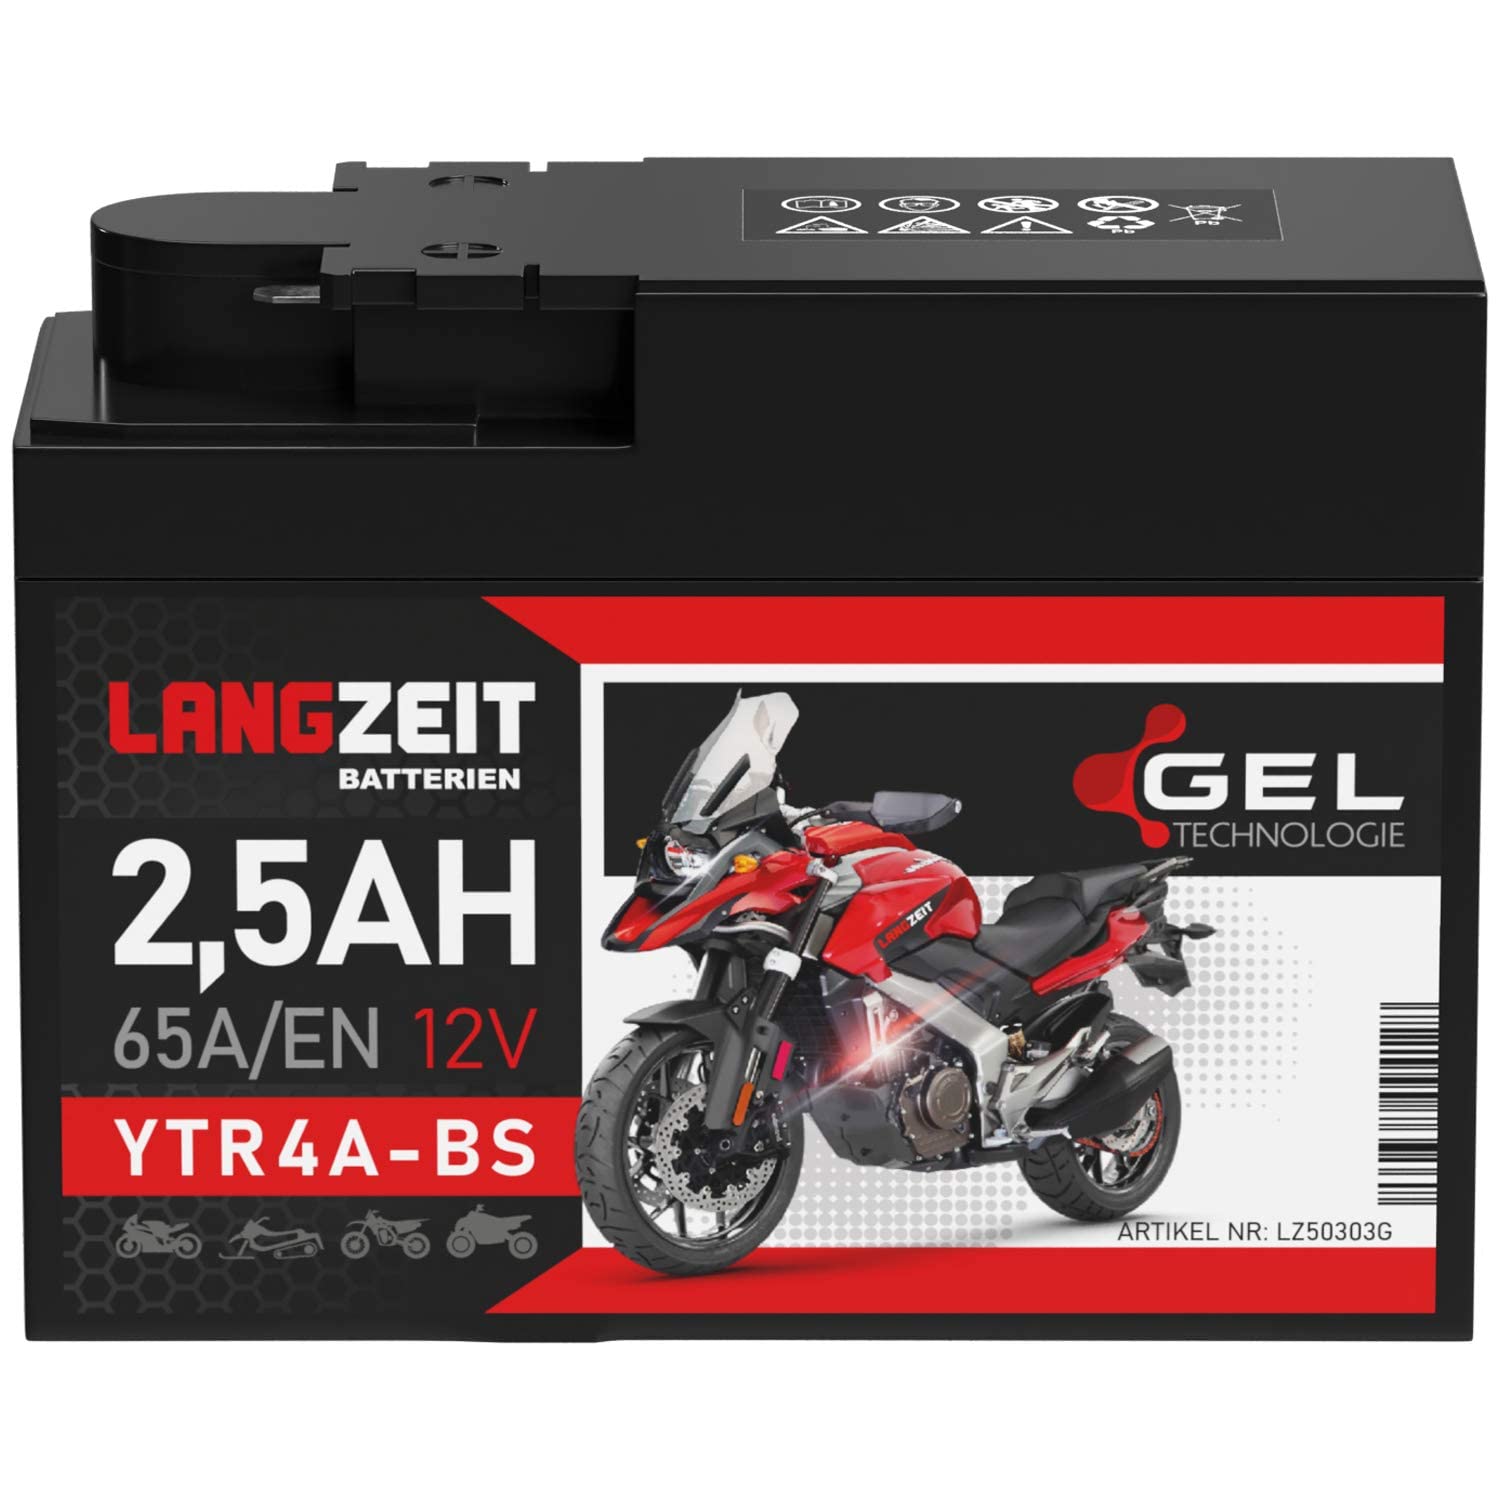 LANGZEIT YTR4A-BS GEL Roller Batterie 12V 2,5Ah 65A/EN GEL Batterie 12V Motorradbatterie doppelte Lebensdauer entspricht ITX4A-BS YTX4A-BS vorgeladen auslaufsicher wartungsfrei ersetzt 2,3Ah von LANGZEIT Batterien